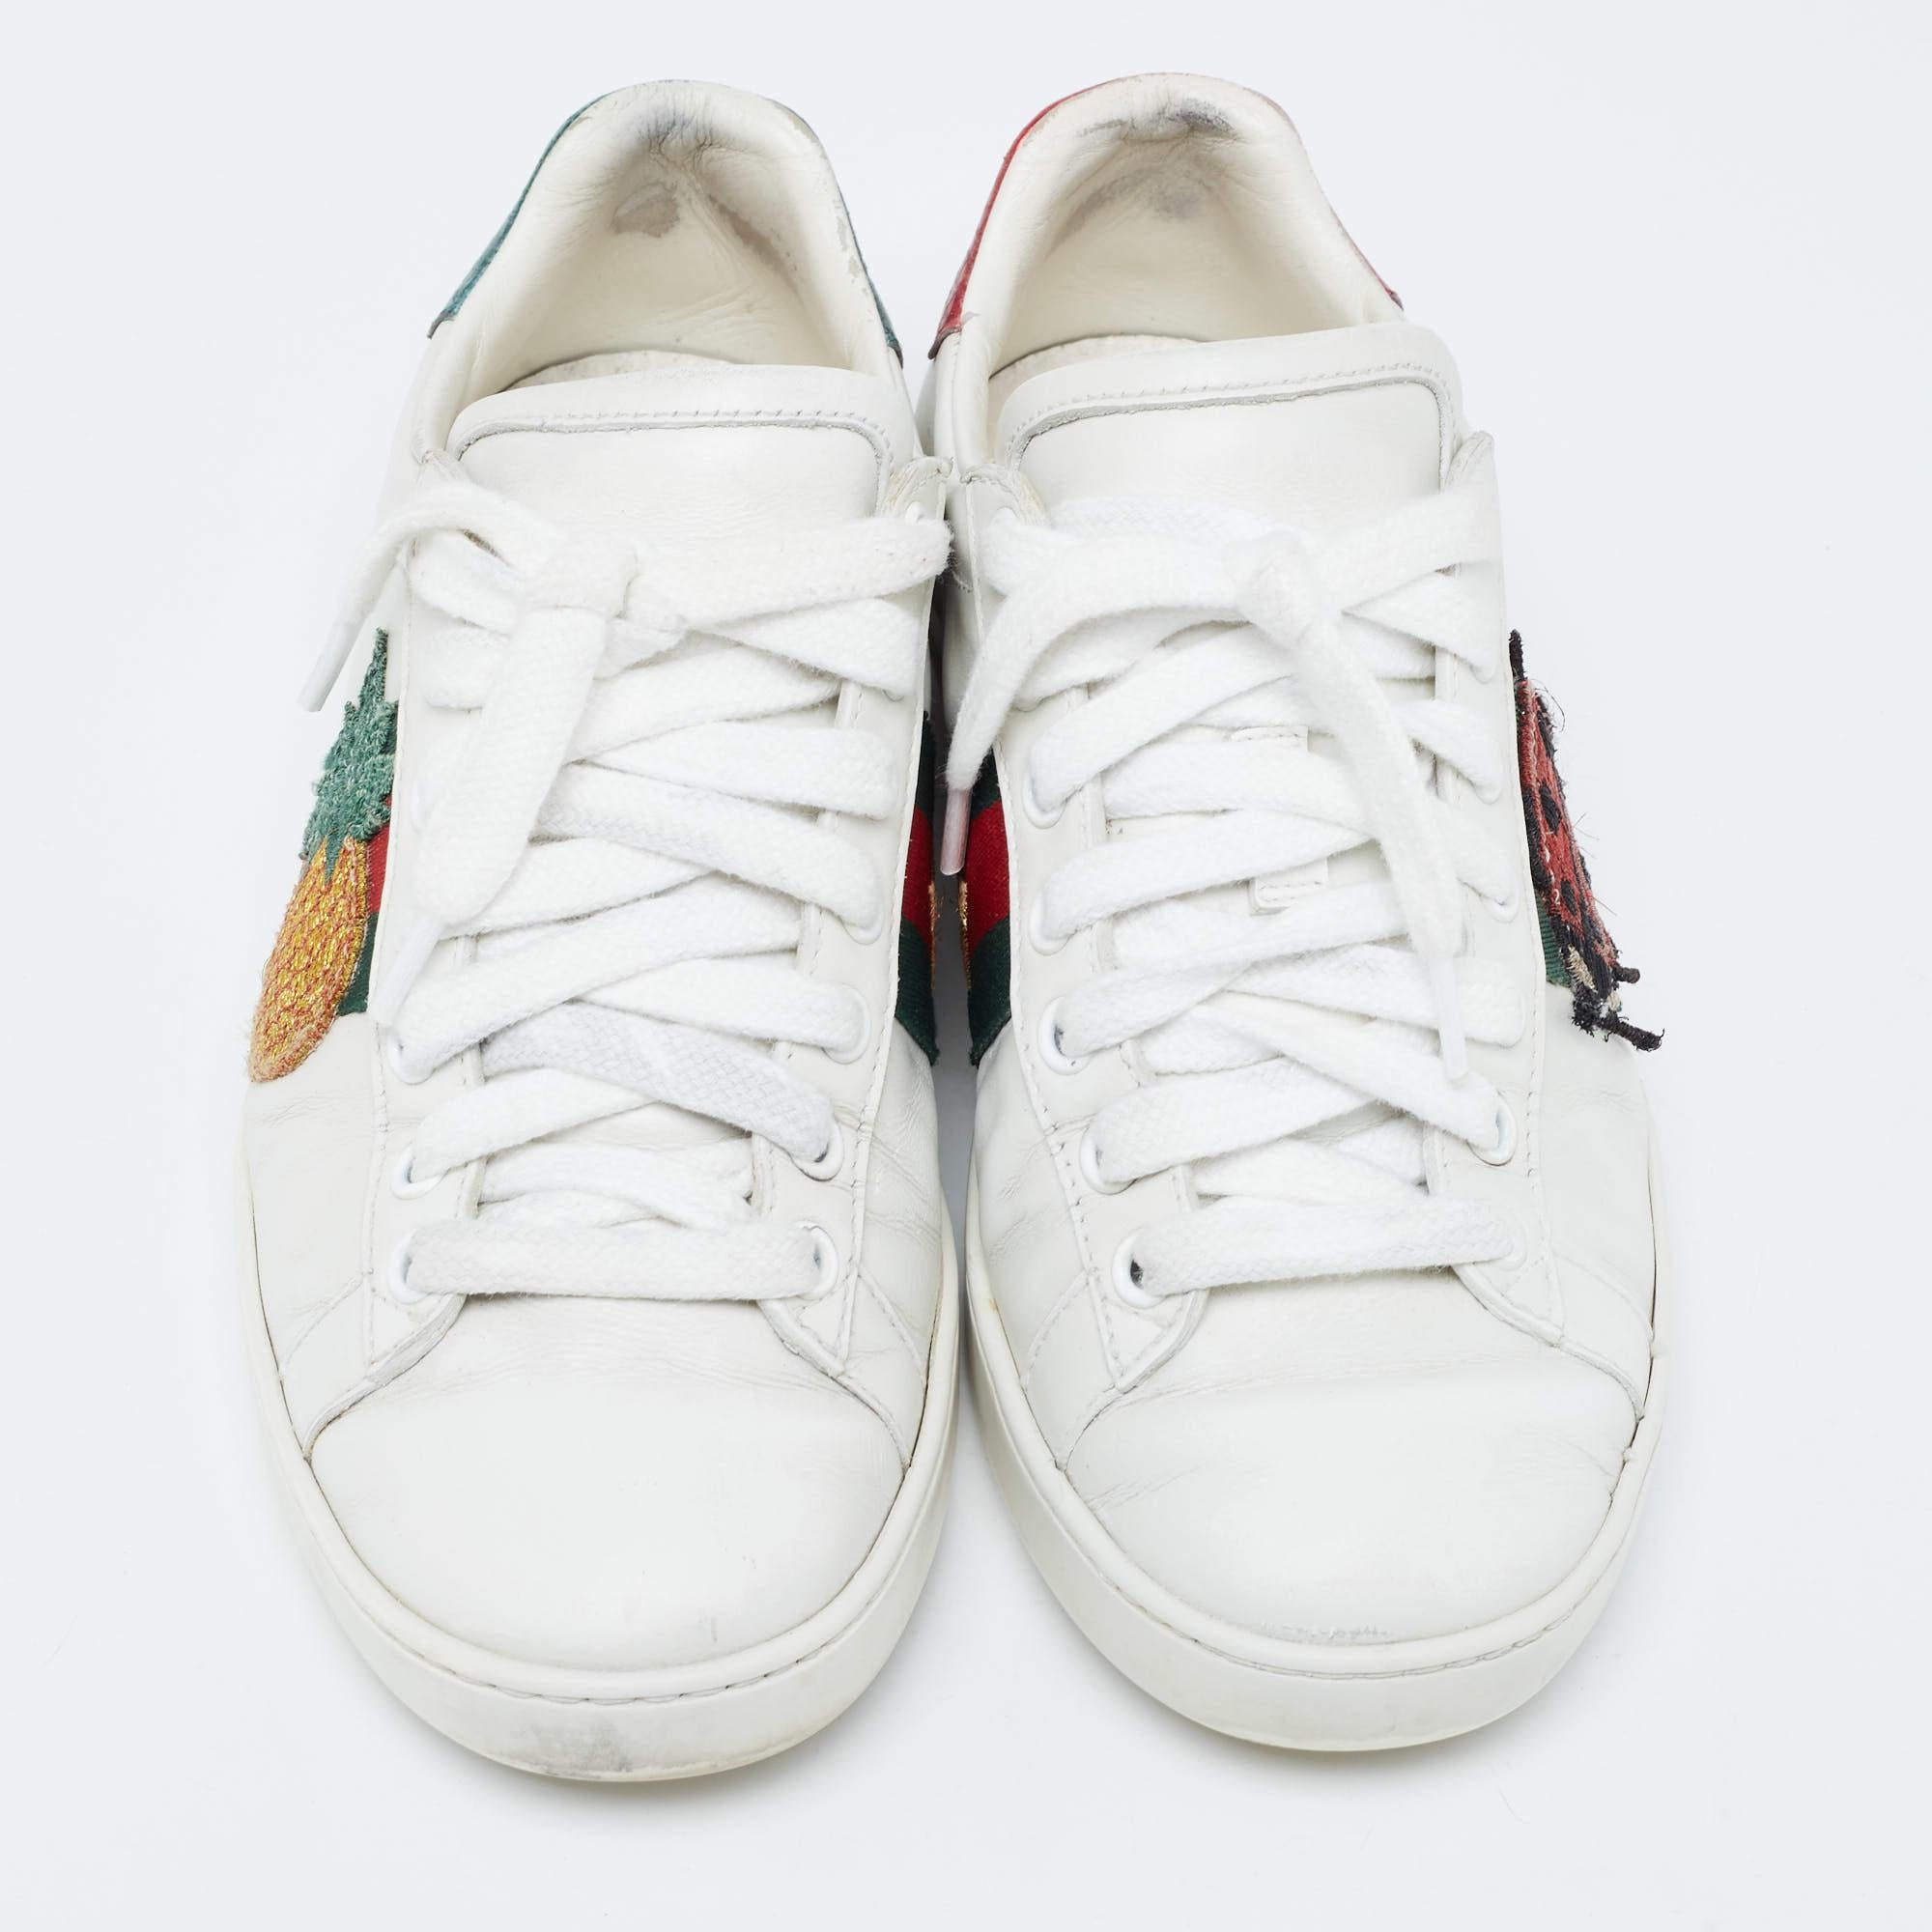 Gucci White Leather Web Ace Sneakers Size 34.5 In Fair Condition For Sale In Dubai, Al Qouz 2